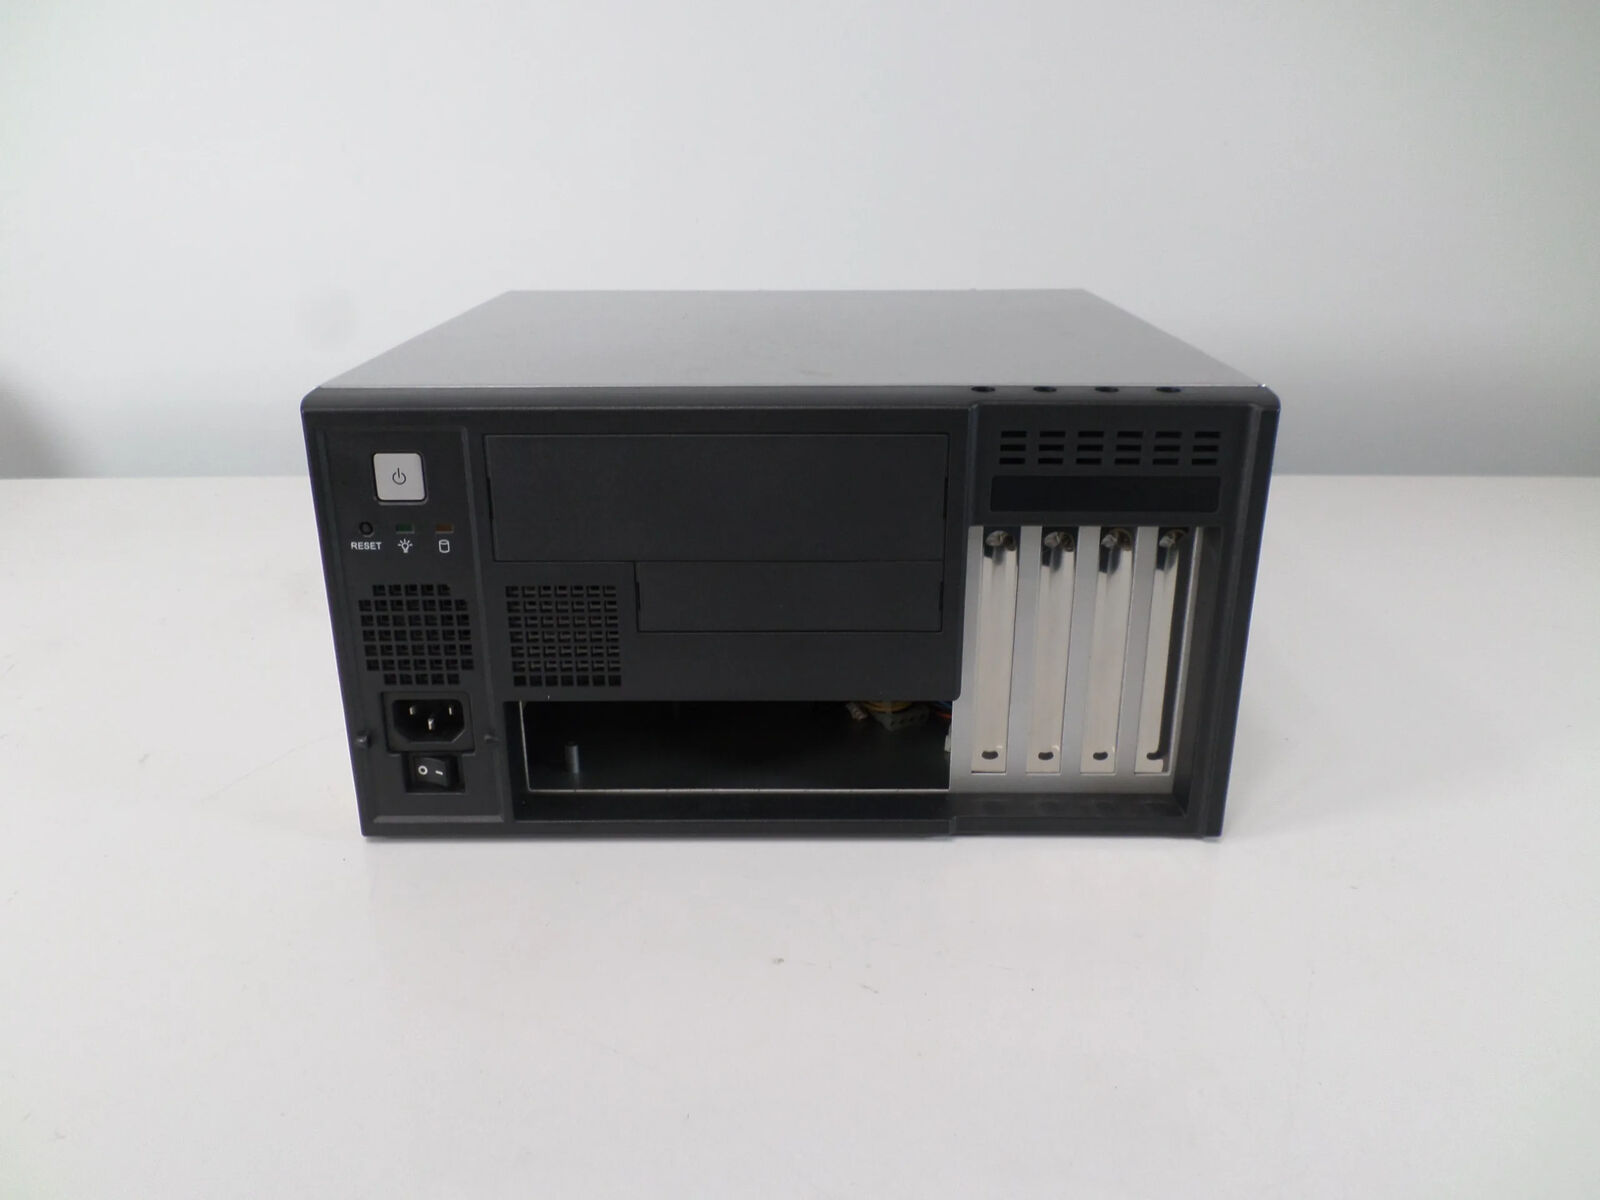 Avantech IPC-5120 Wall mount mATX Computer Case with Power Supply